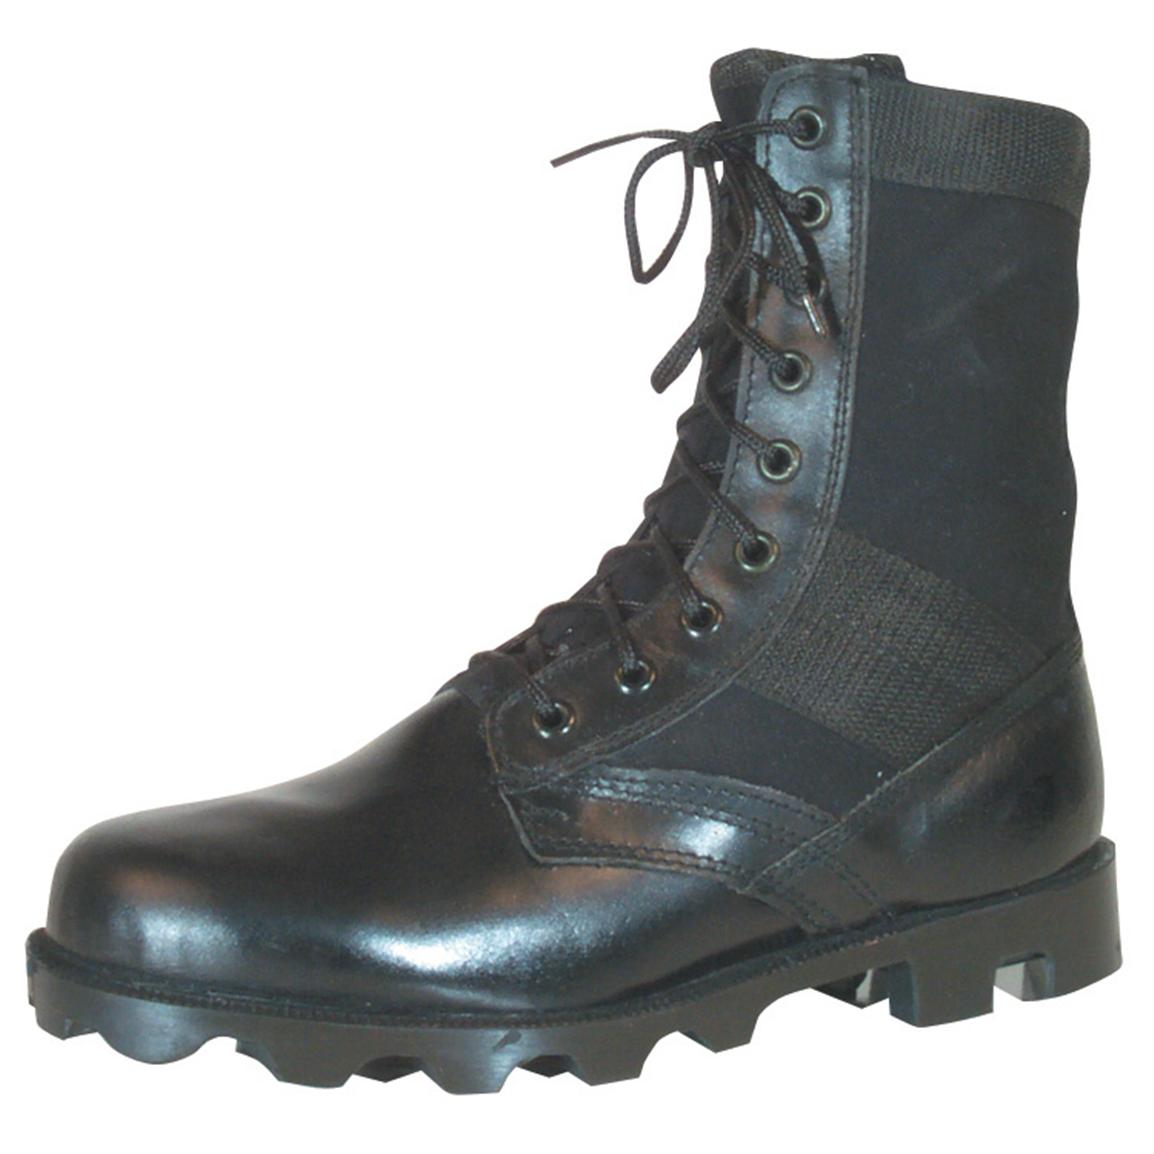 Fox Tactical Men's Vietnam Jungle Boots, Black